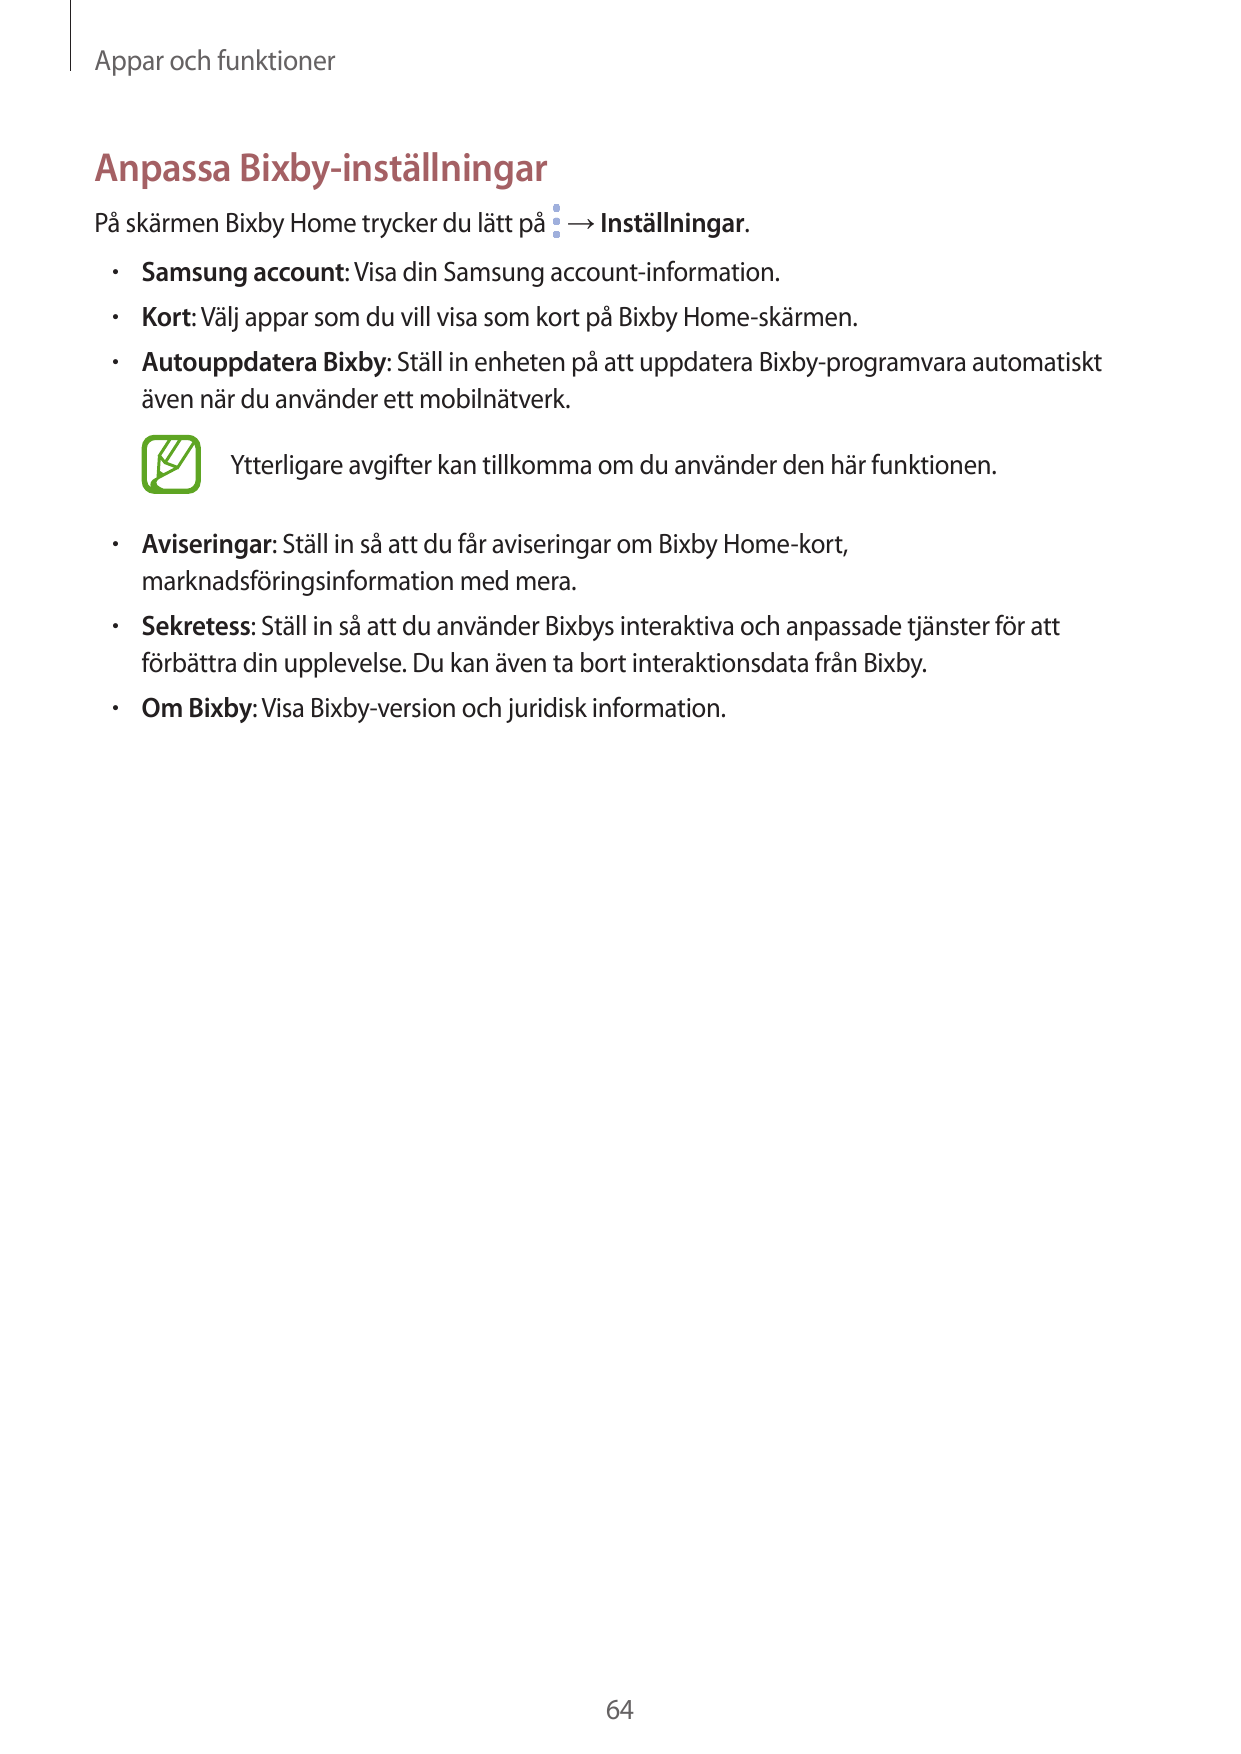 Appar och funktionerAnpassa Bixby-inställningarPå skärmen Bixby Home trycker du lätt på → Inställningar.• Samsung account: Visa 